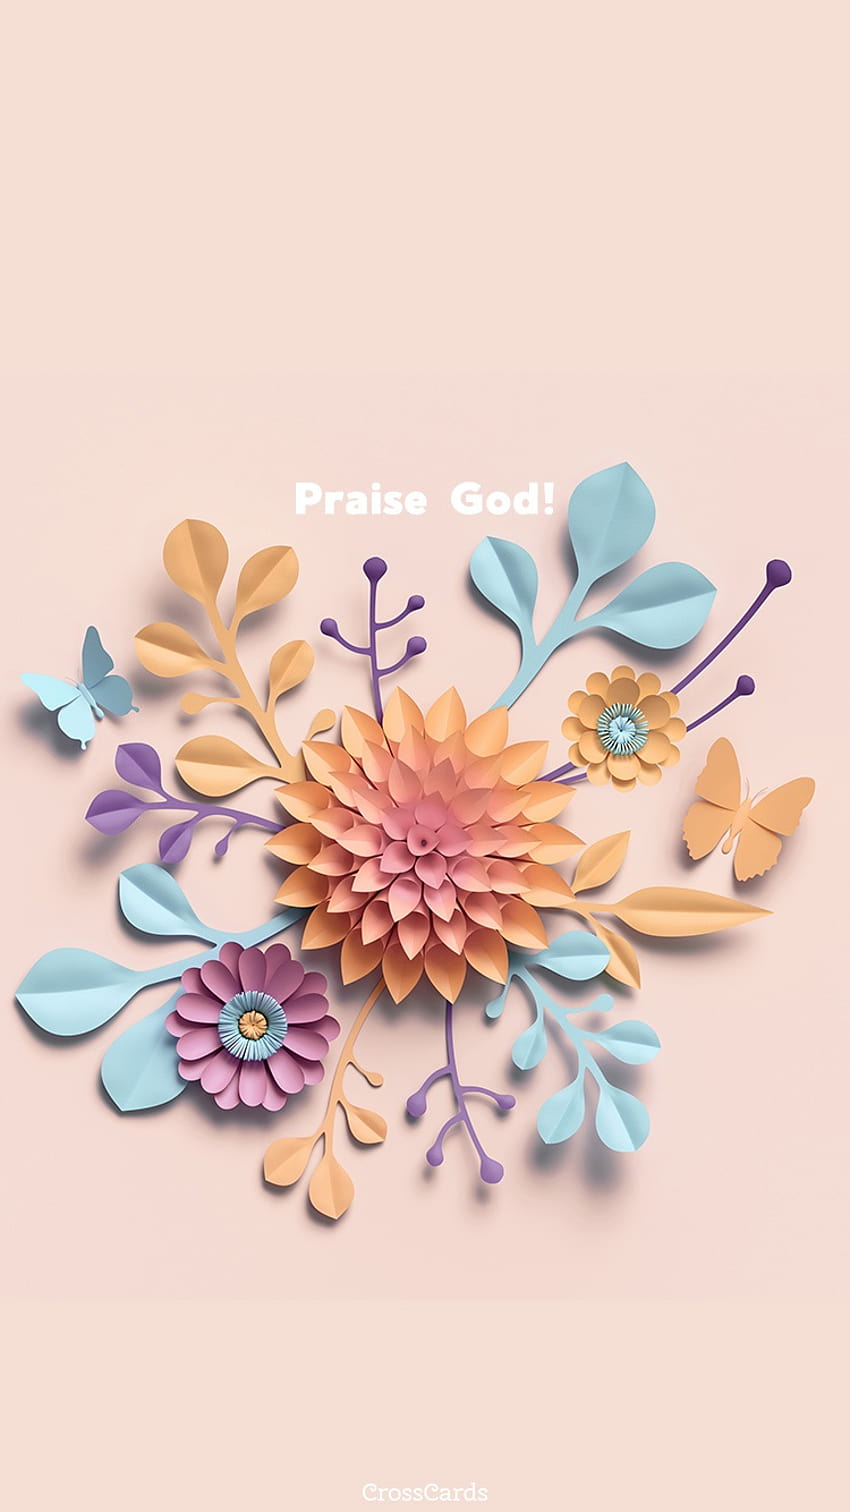 Praise God!, praise the lord HD phone wallpaper